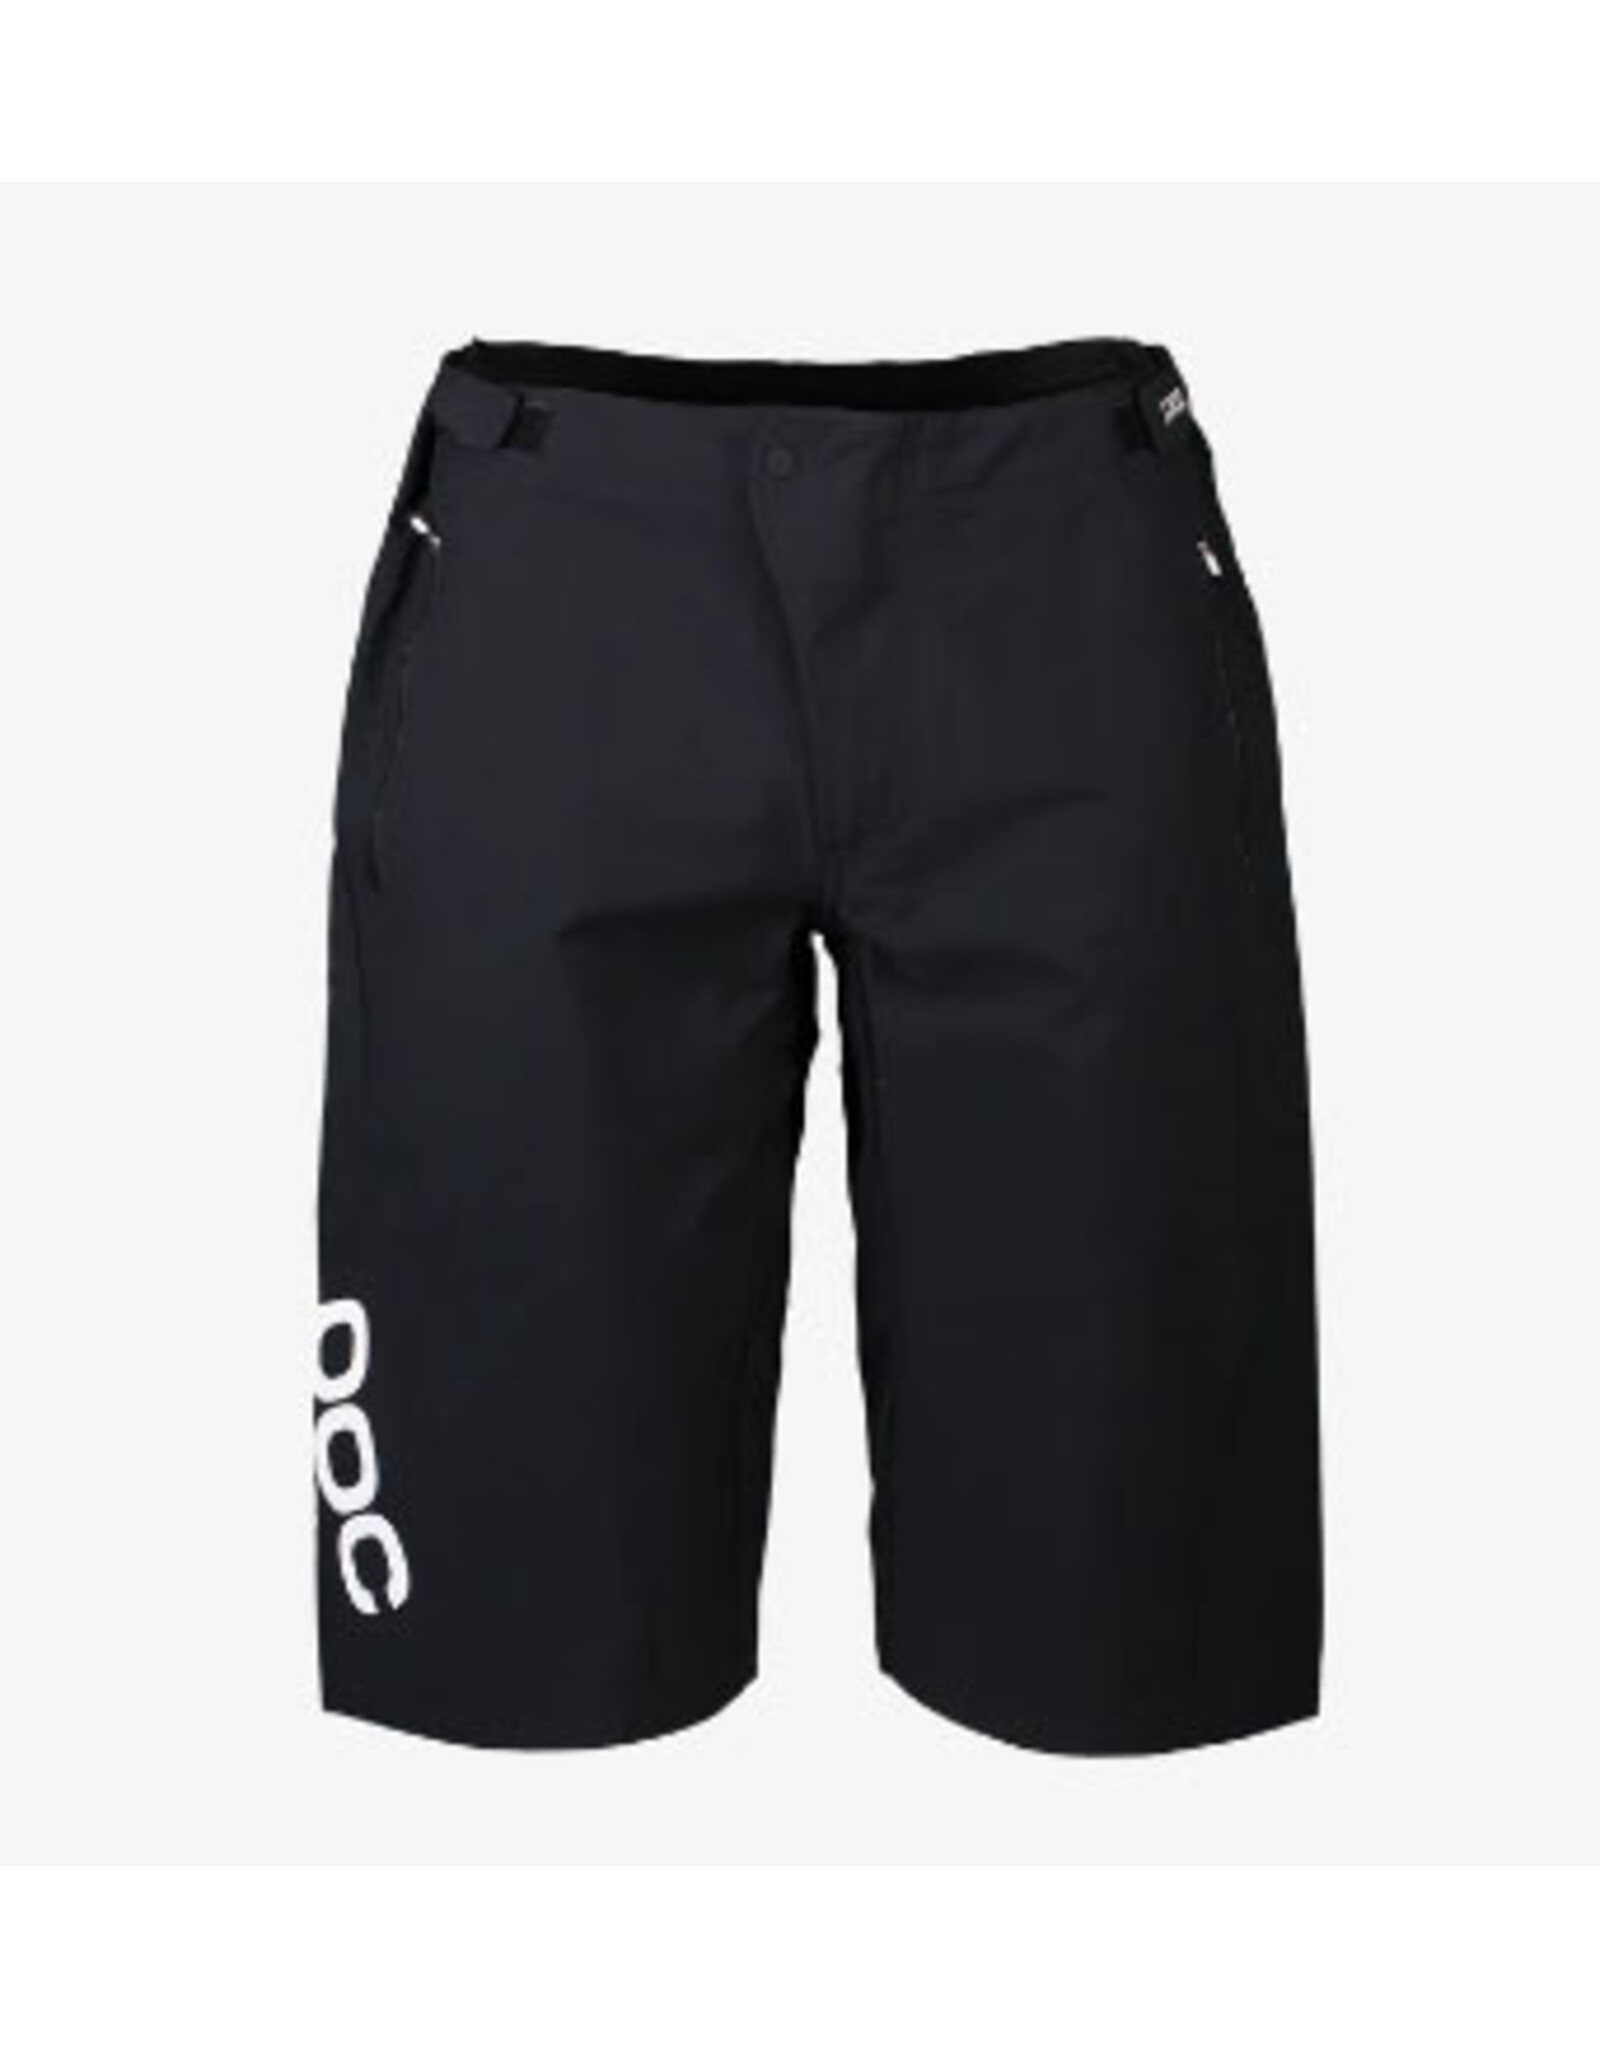 POC POC Essential Enduro Shorts Black